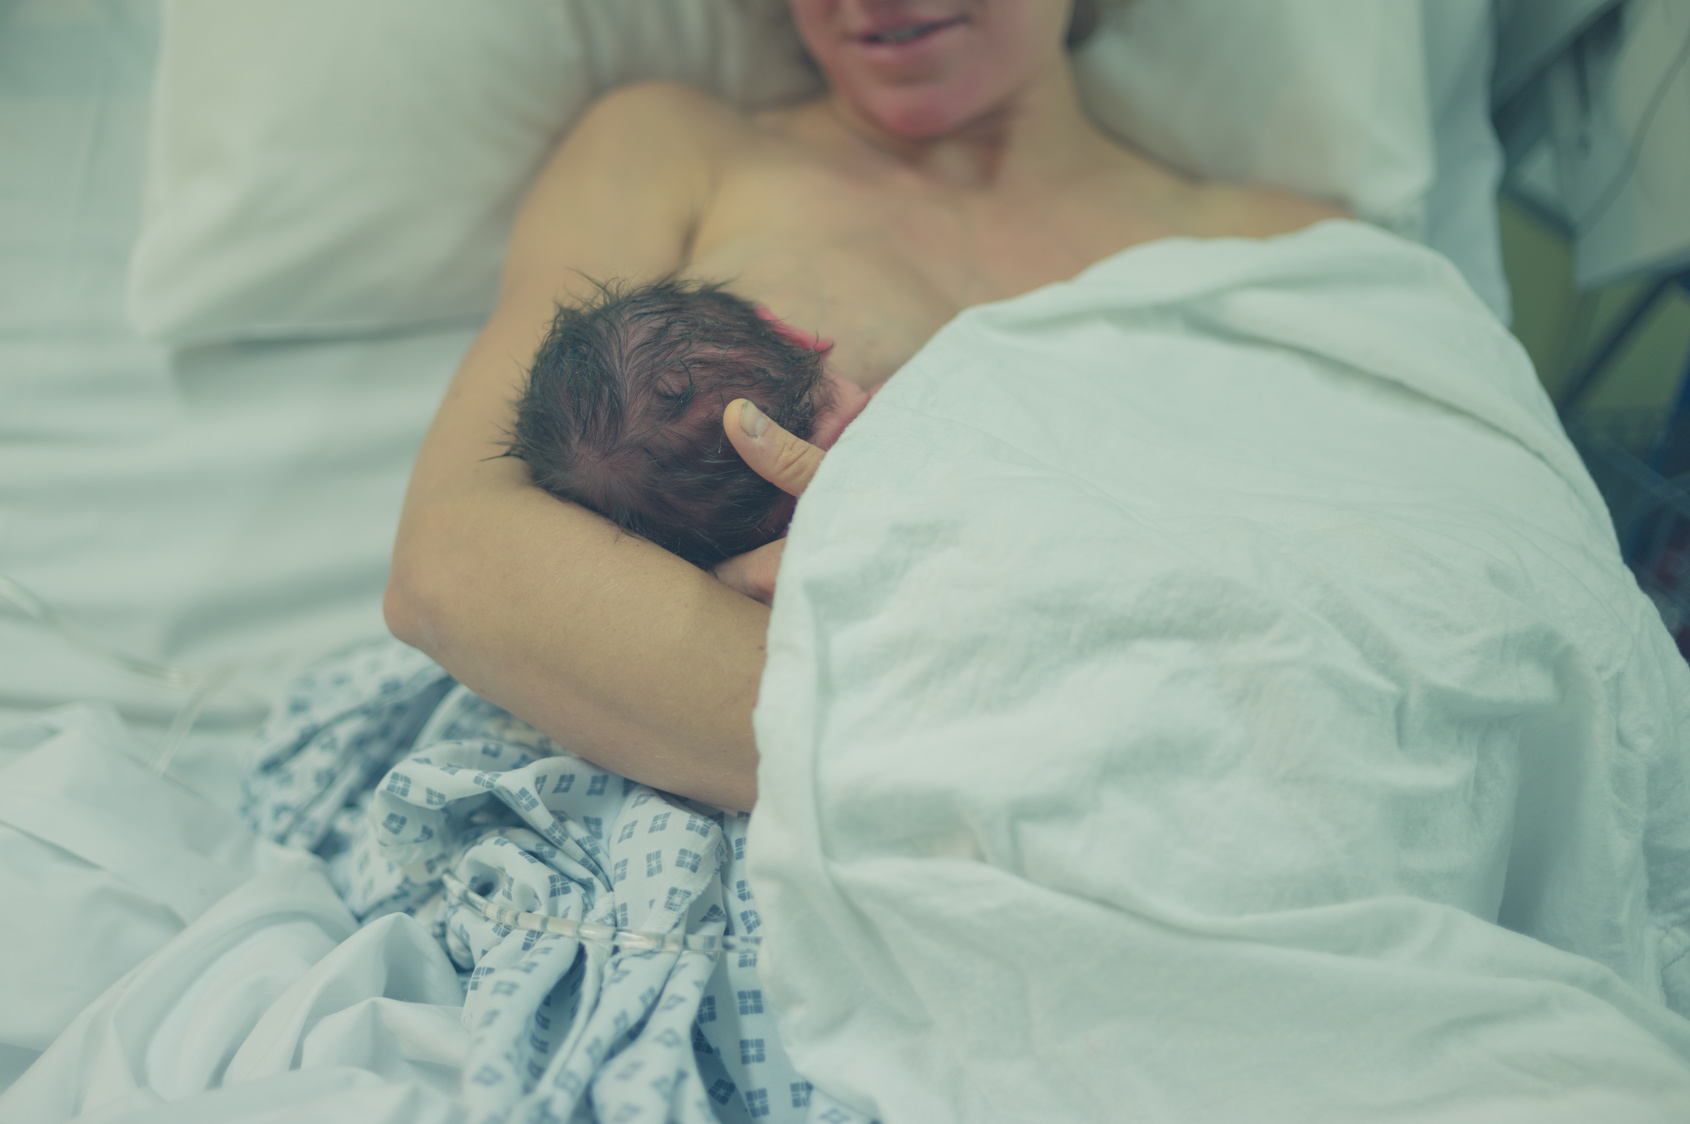 Schwere Geburt? Australierin bringt fast 6 Kilo schweres Kind zur Welt! 